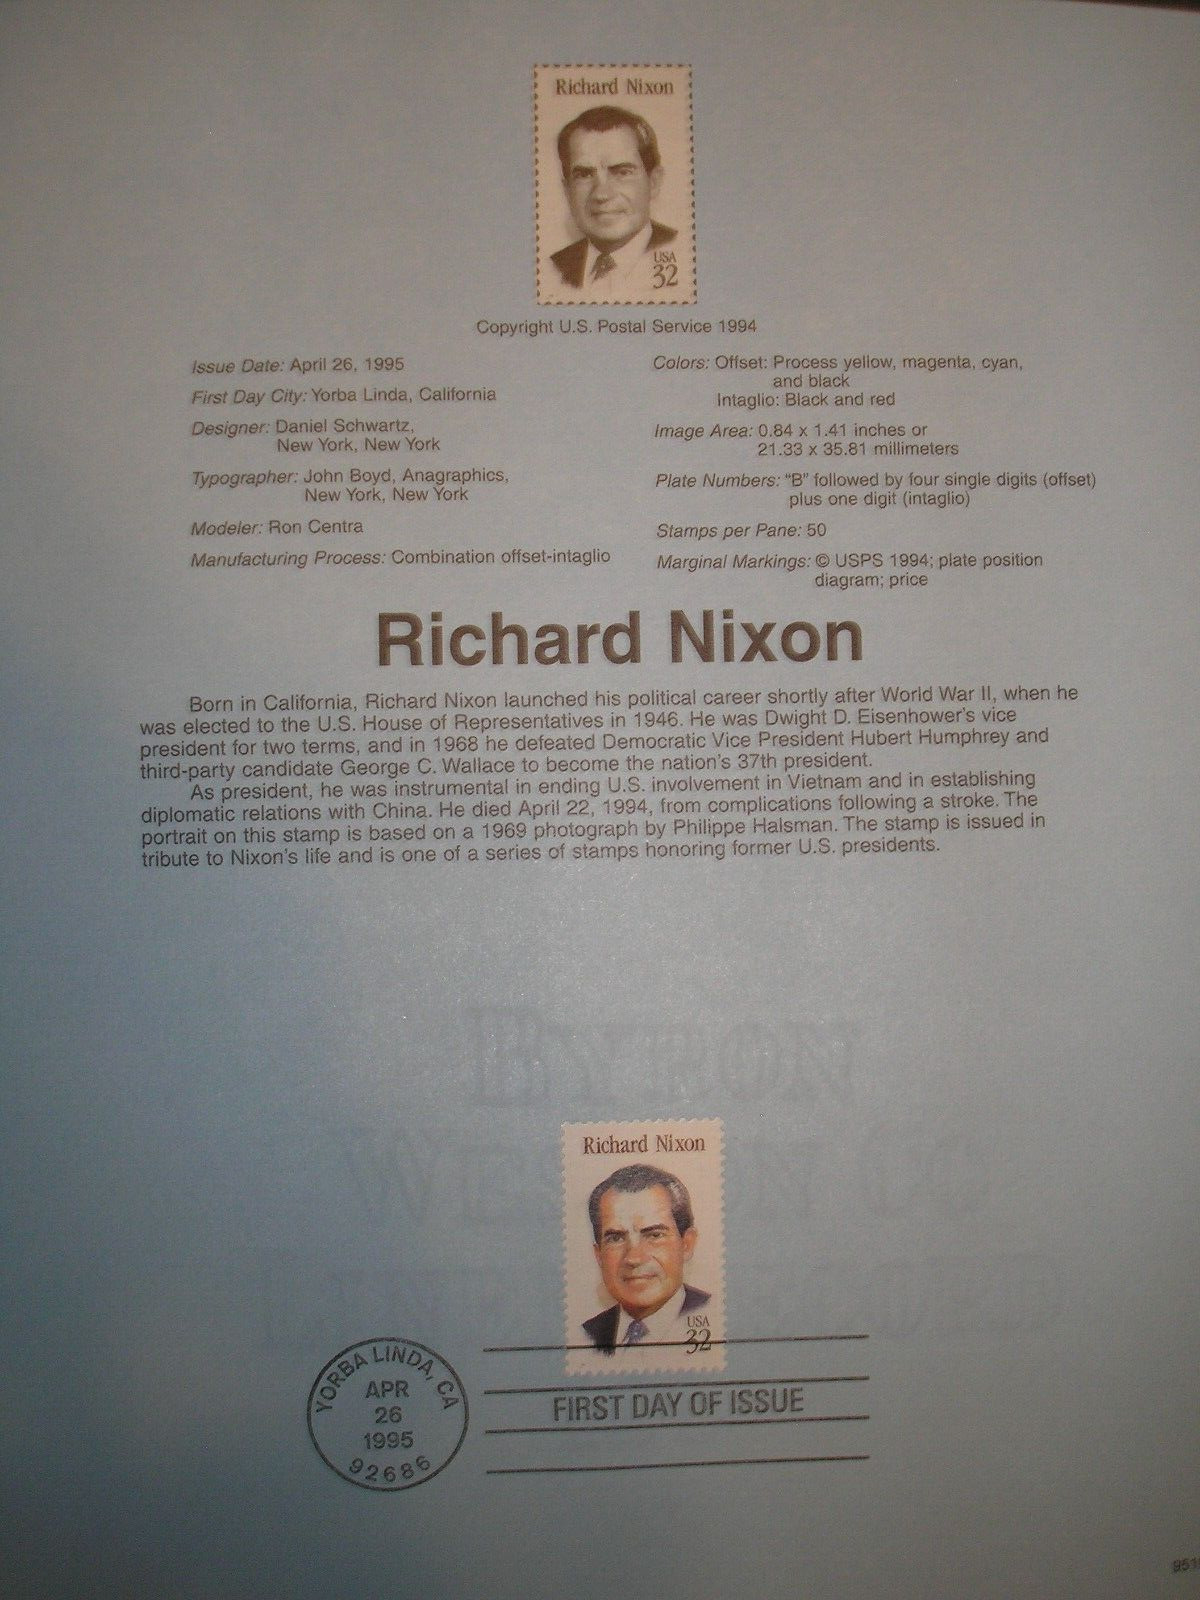 USPS Souvenir Page for .32 Scott 2955 Richard Nixon Stamp.